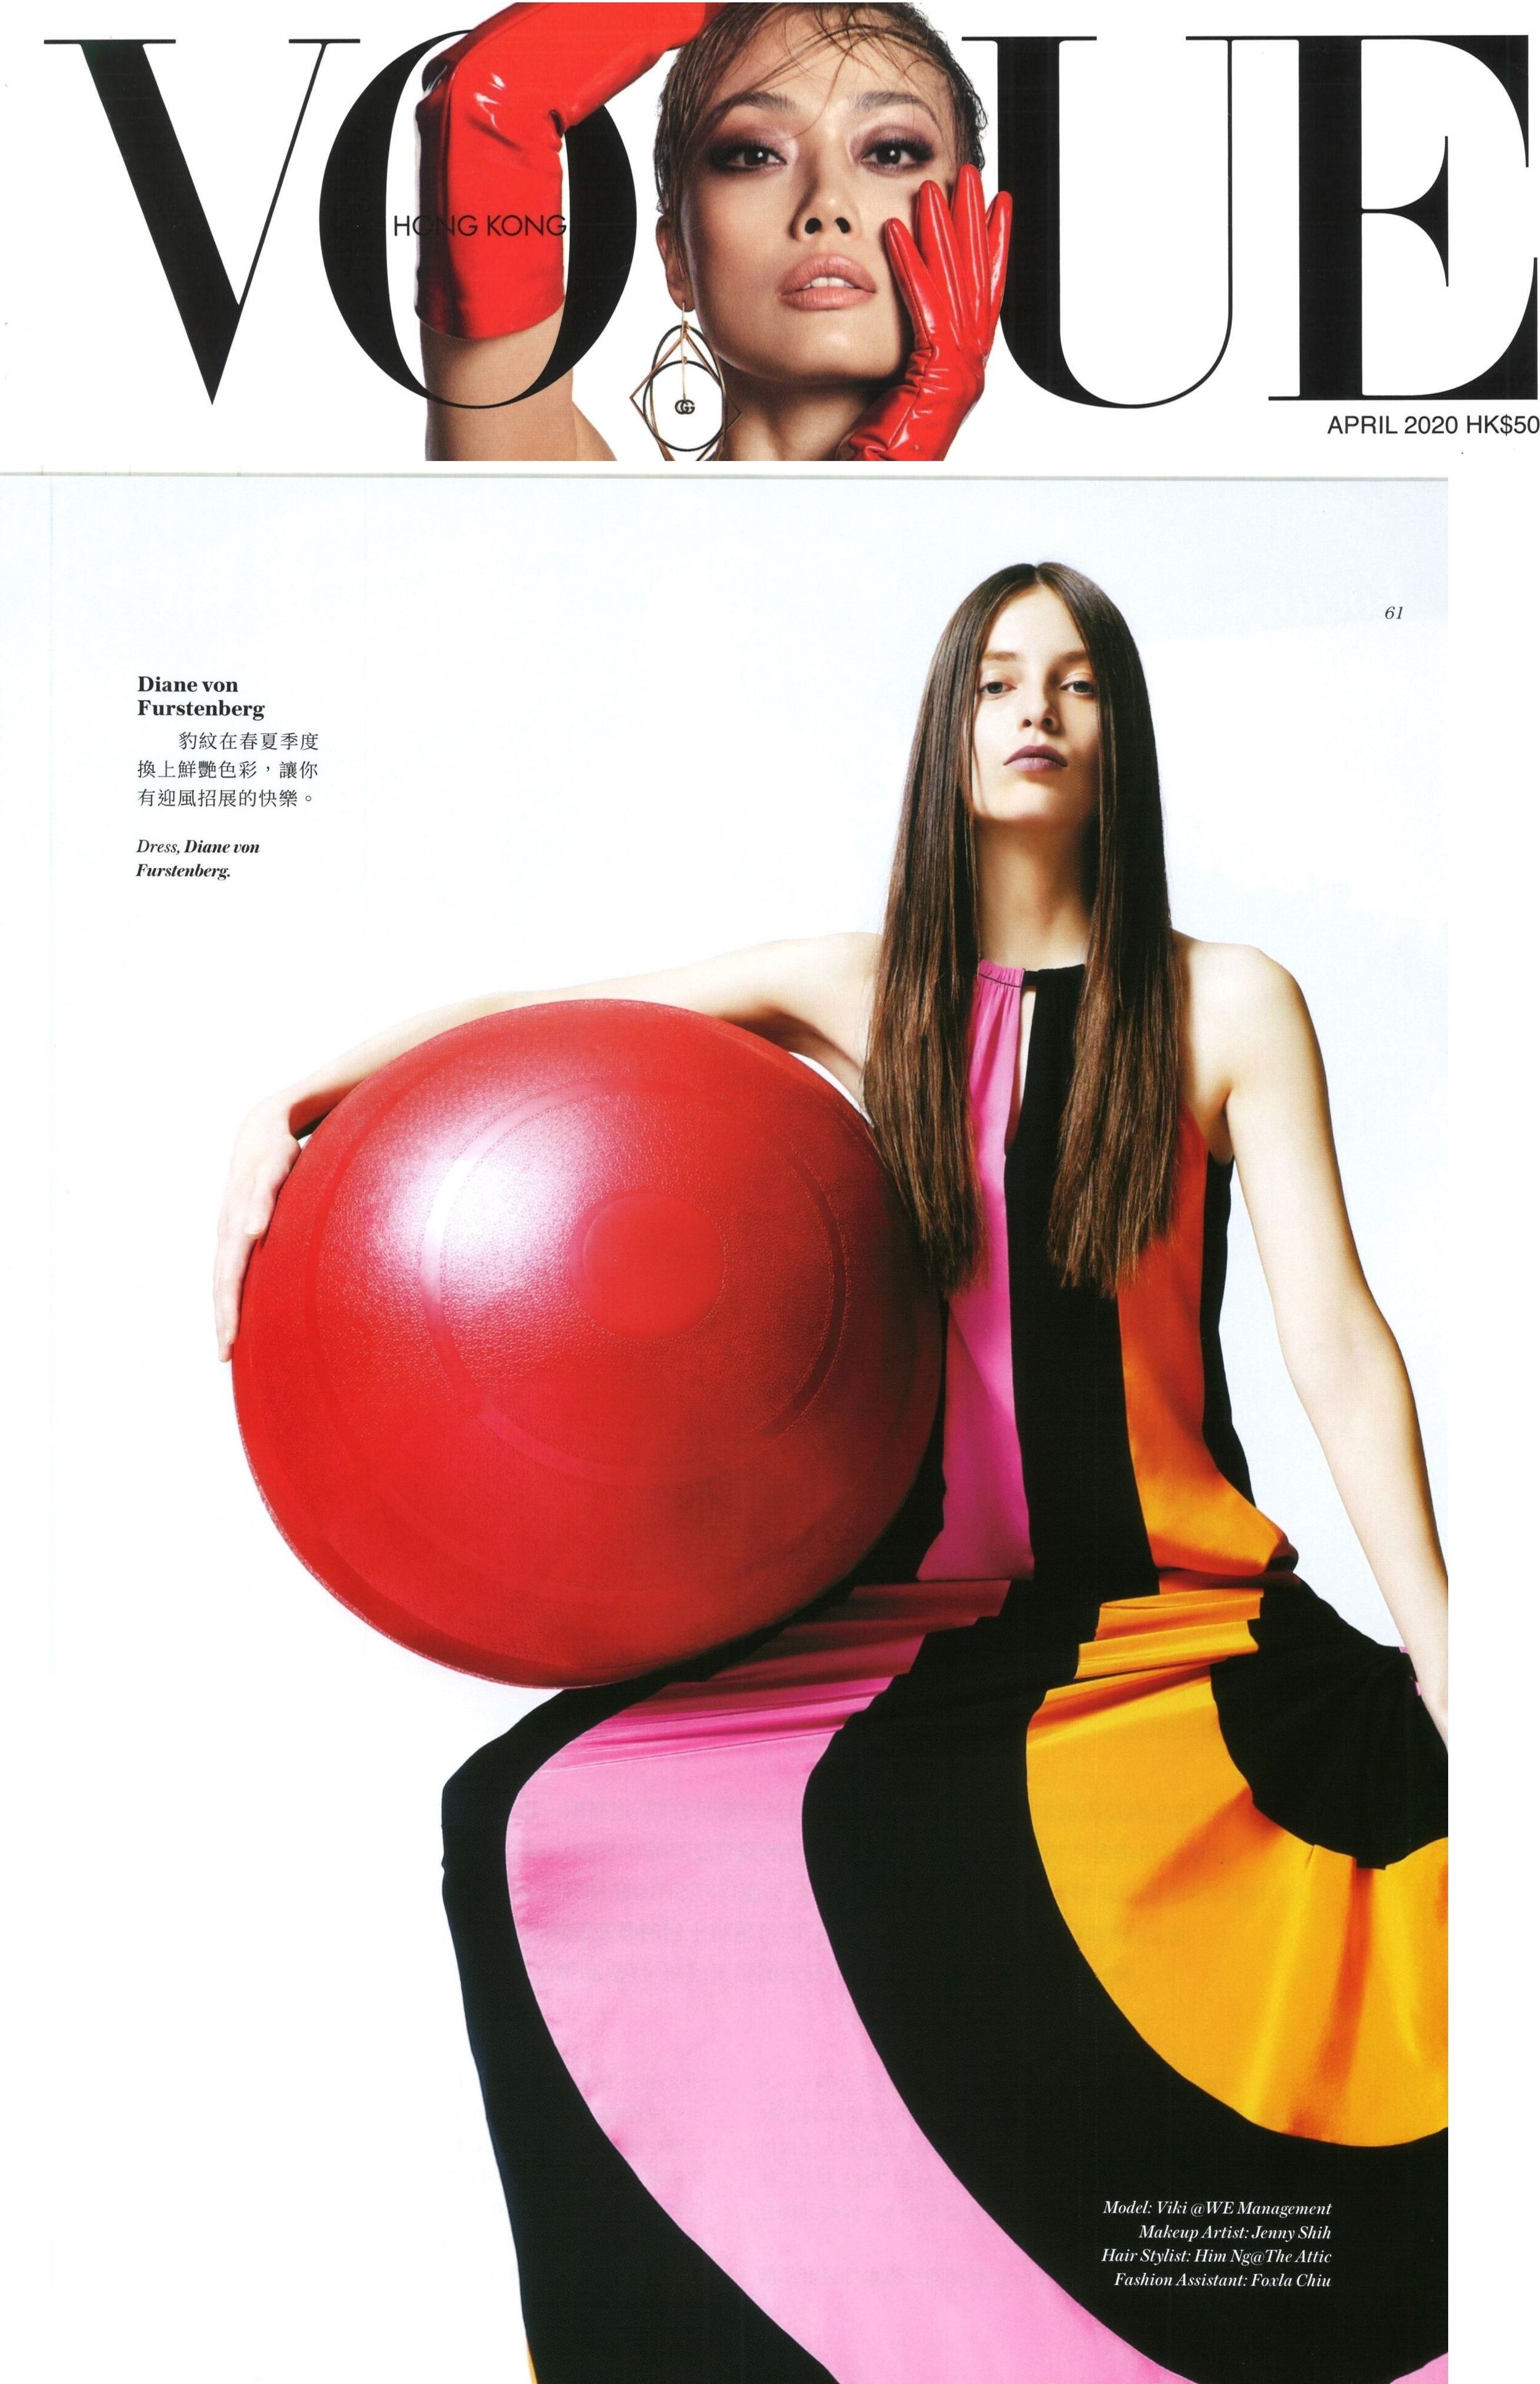 Vogue Hong Kong_Apr 20 DVF 1.jpg